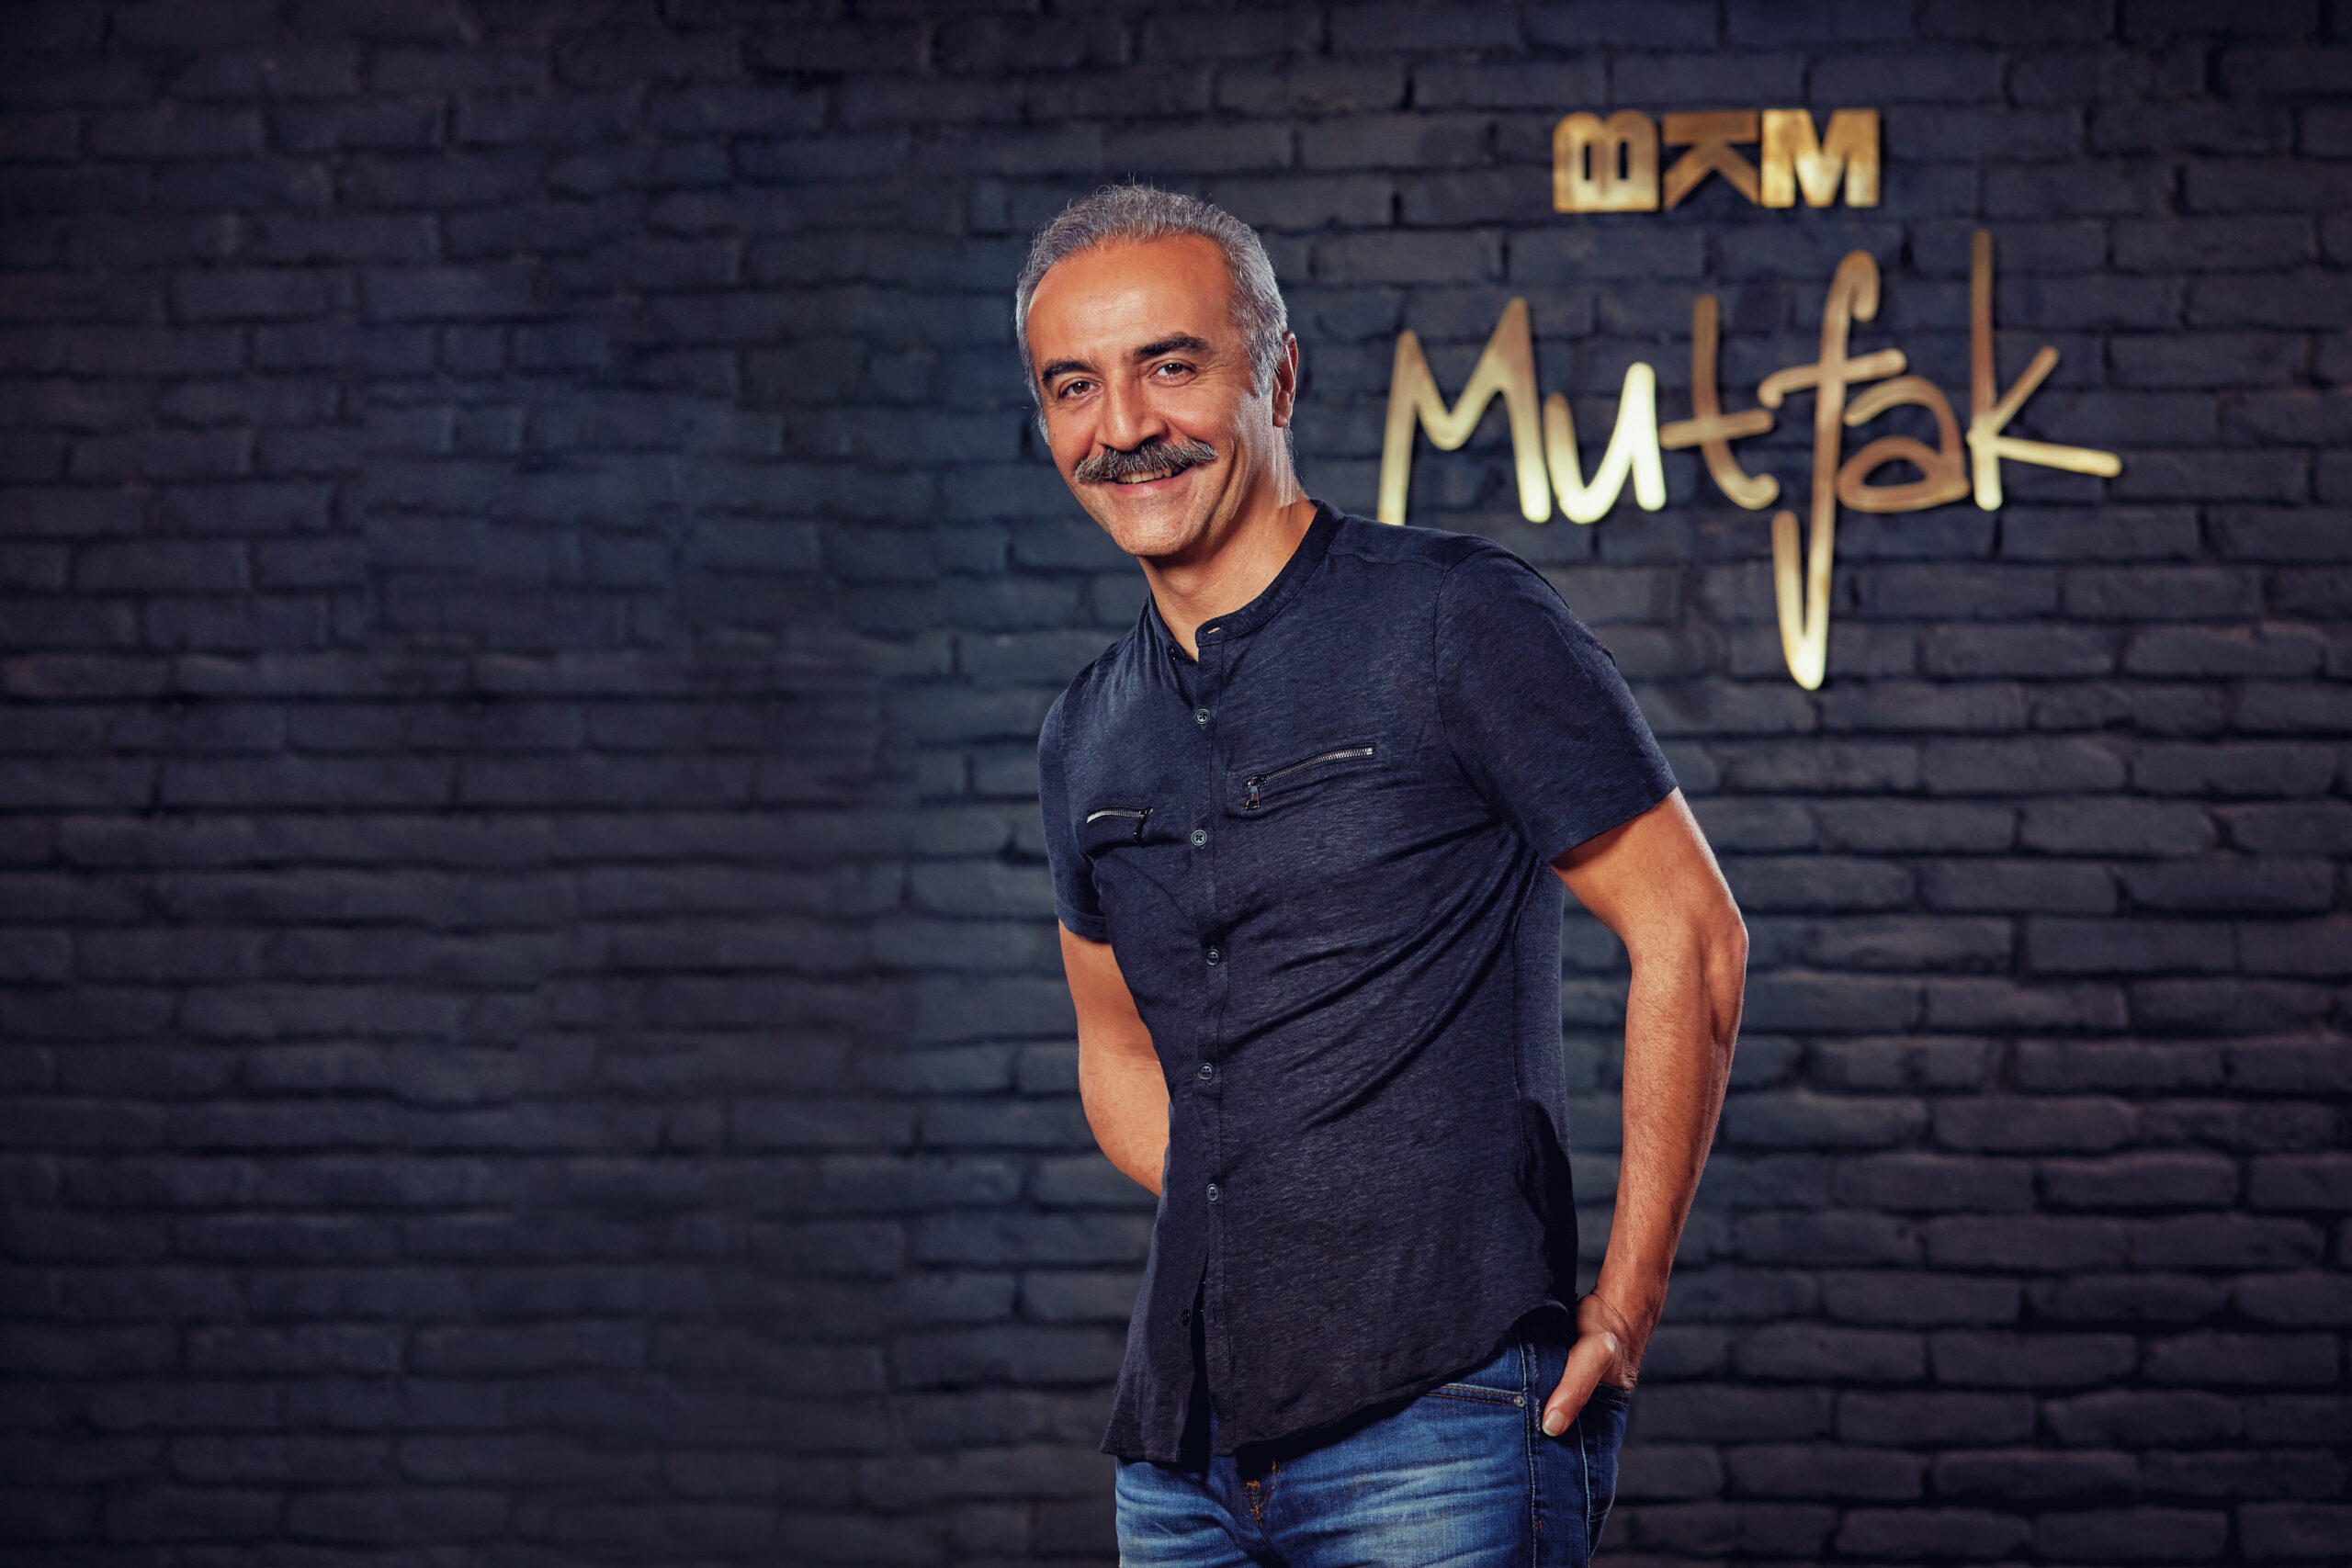 Bkm Mutfak’ın yeni restoranı Kadıköy’de açıldı